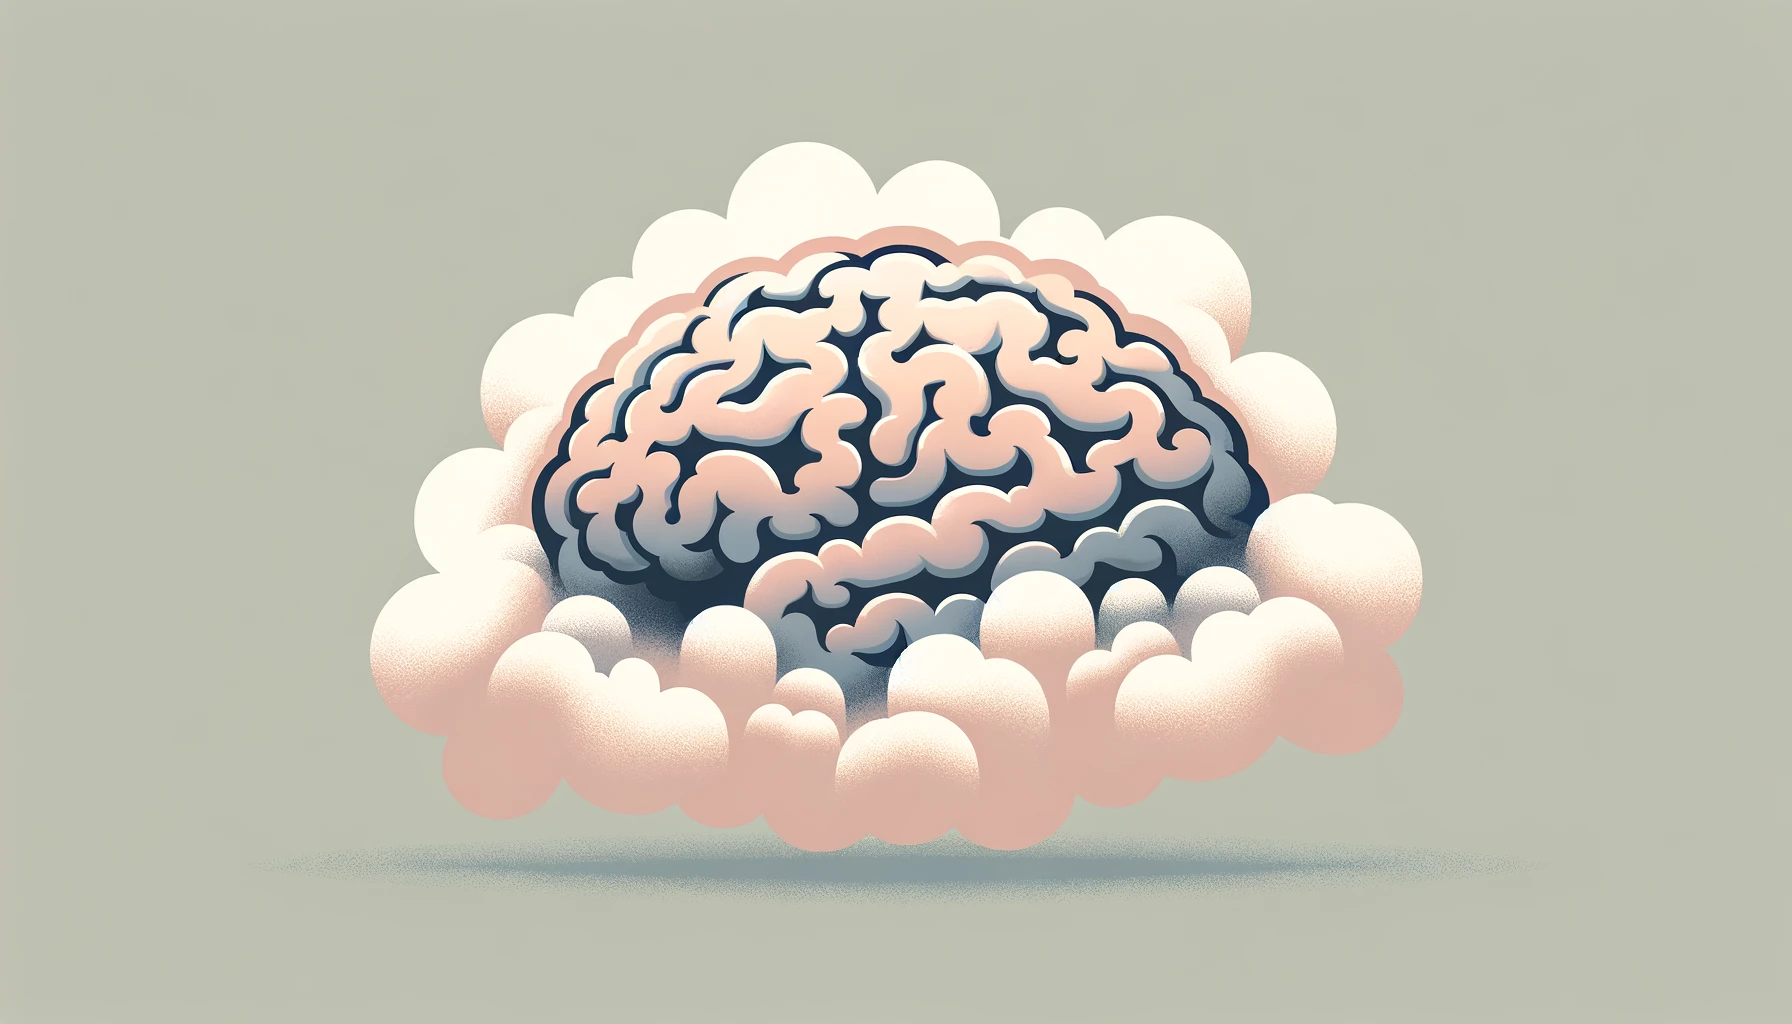 Illustration of brain fog